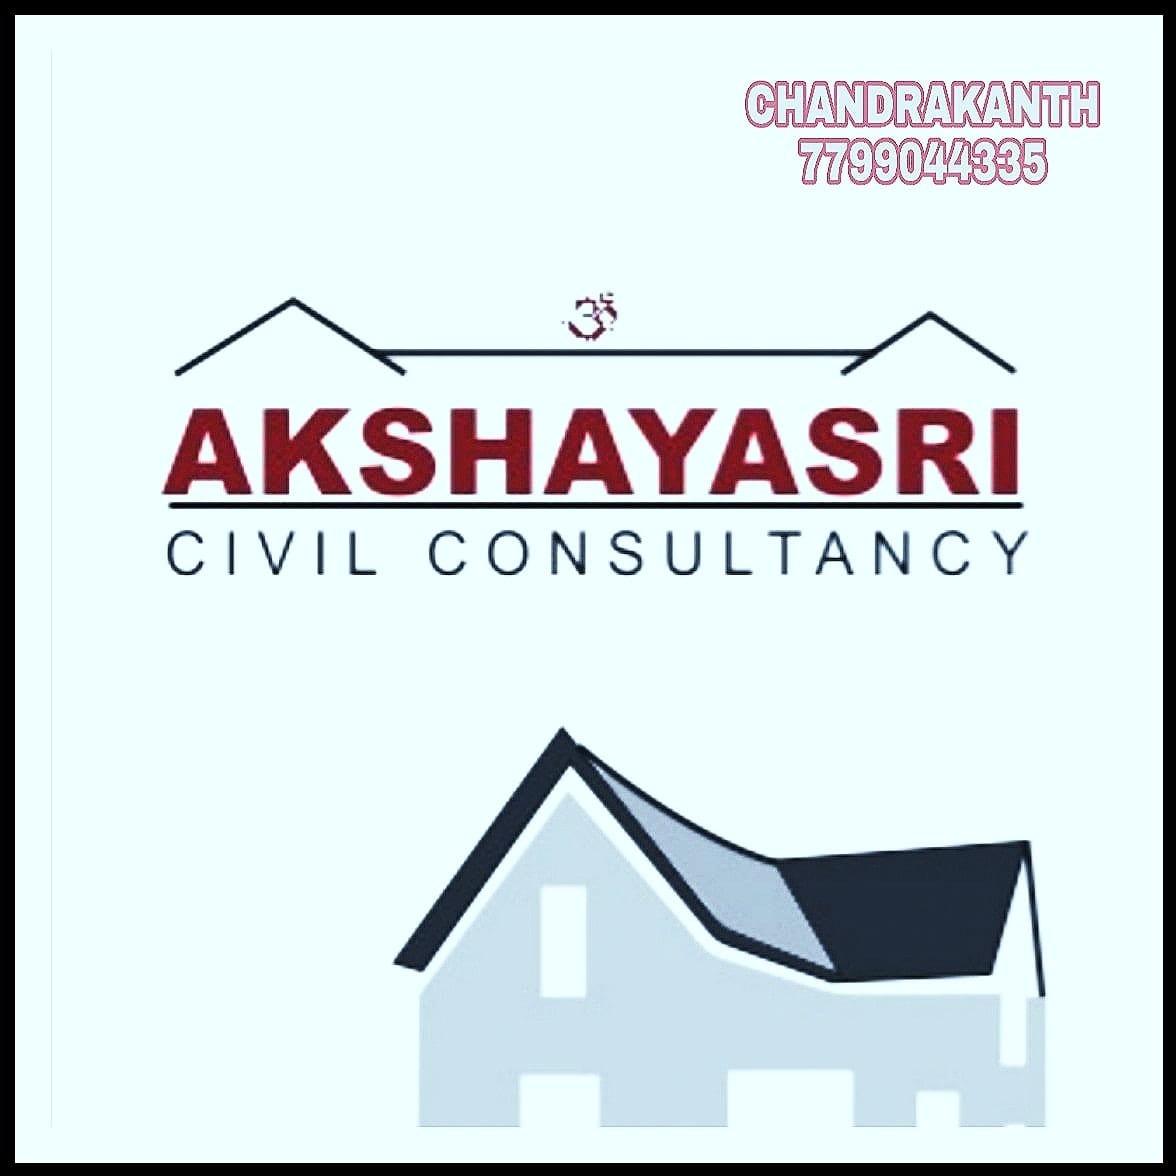 Akshayasri Civil Consultancy